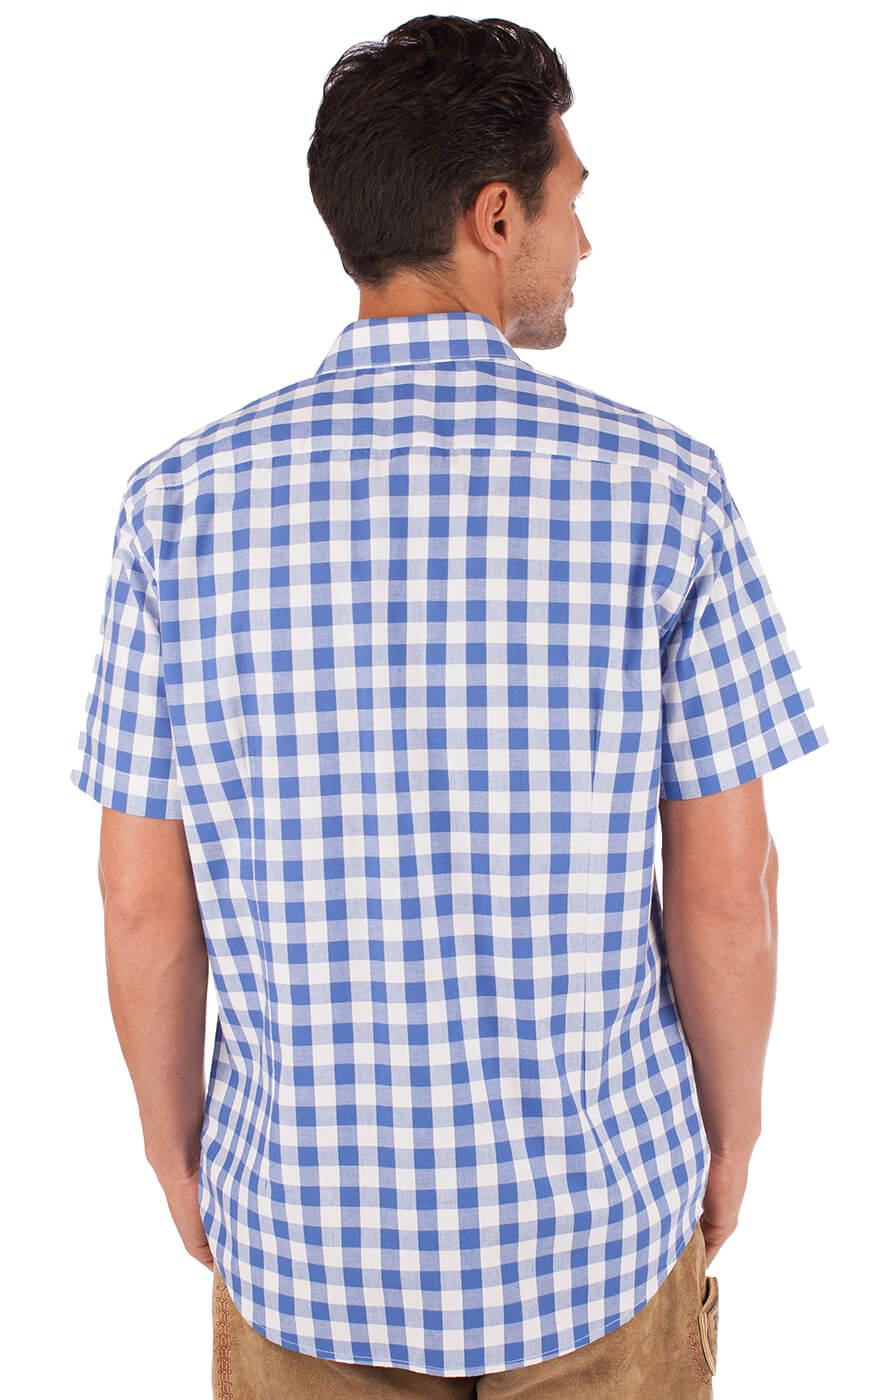 weitere Bilder von German traditional shirt Sonnblick blue